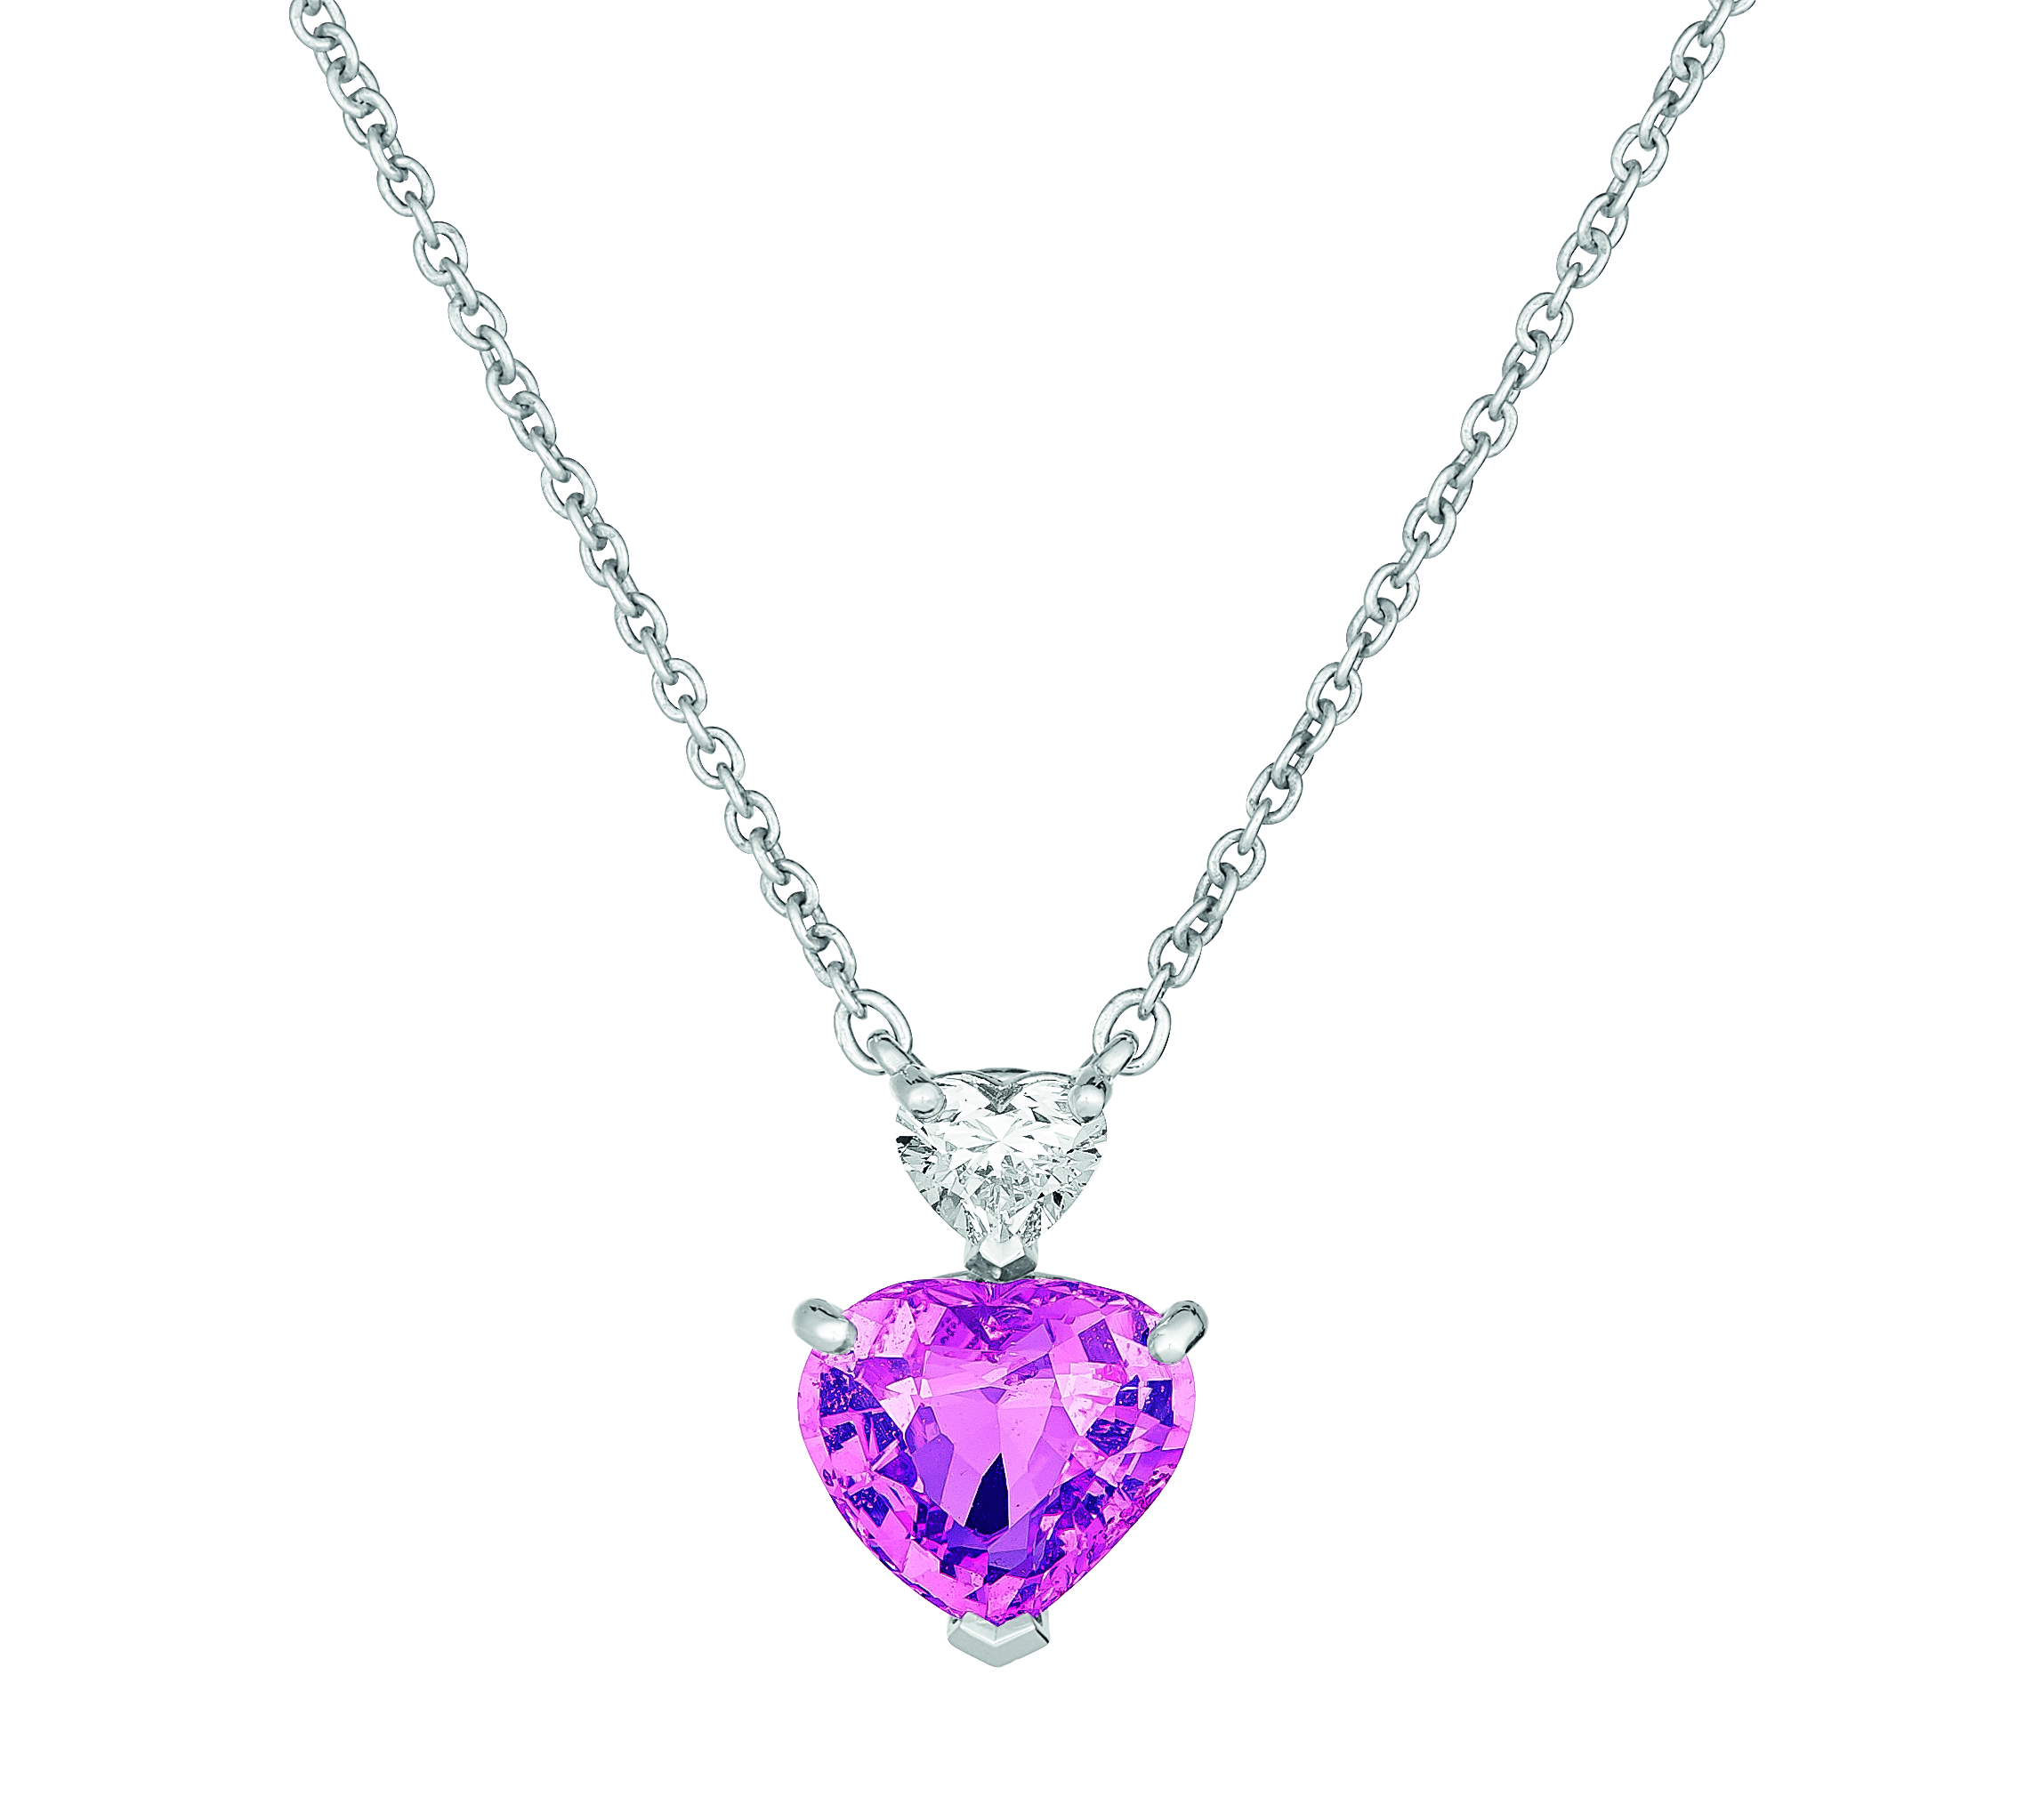 Juweliere A.E. Koechert Collier rosa Saphir Herz 254ct Diamant 030ct E 15.000 - Juweliere A.E. Köchert_Collier_rosa Saphir-Herz 2,54ct, Diamant 0,30ct_€ 15.000